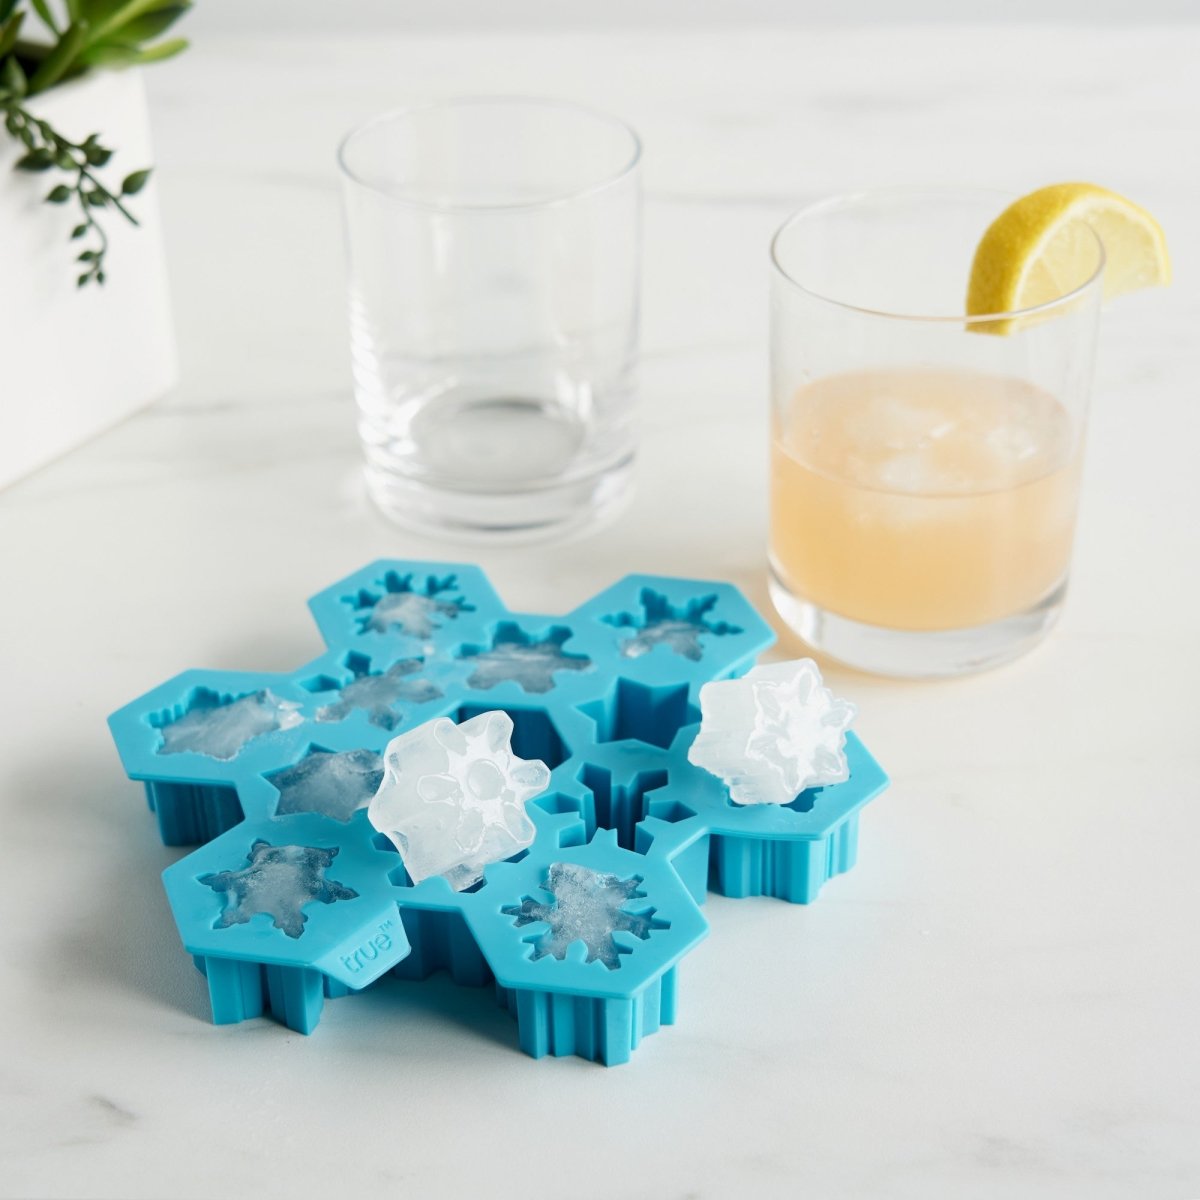 Onyx ice cube tray